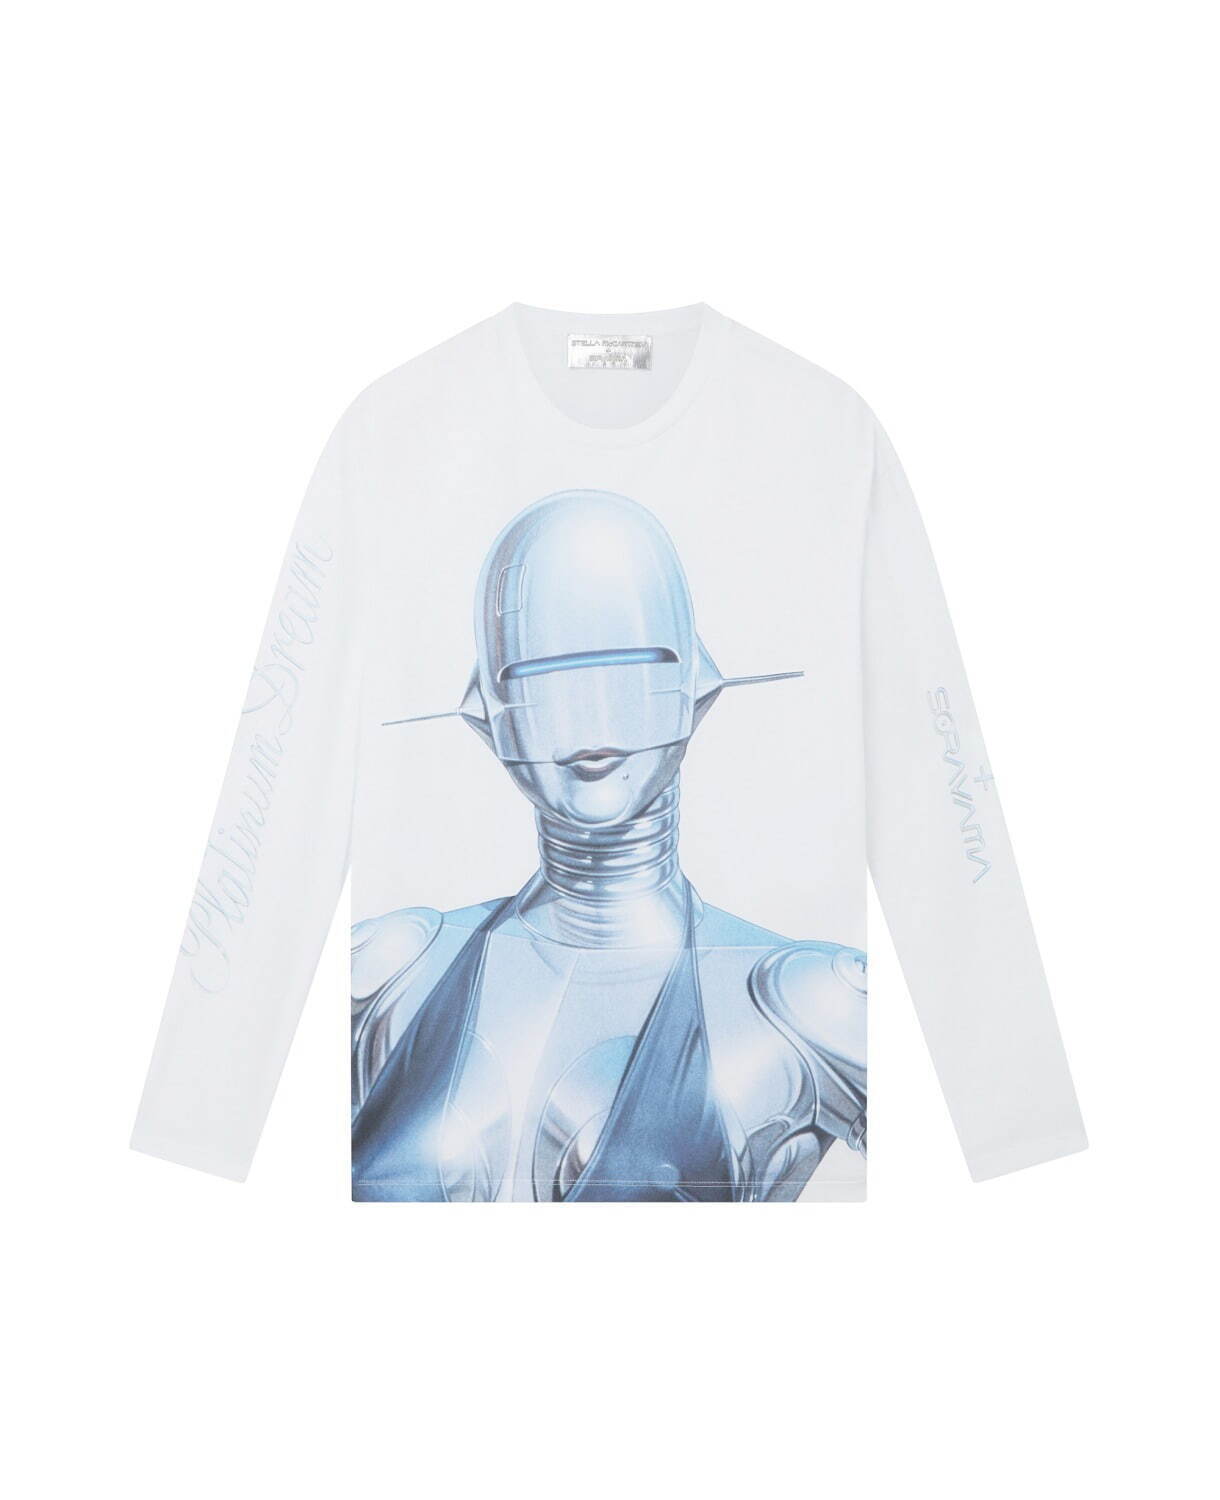 セクシーロボット オーガニックコットン Tシャツ 69,300円